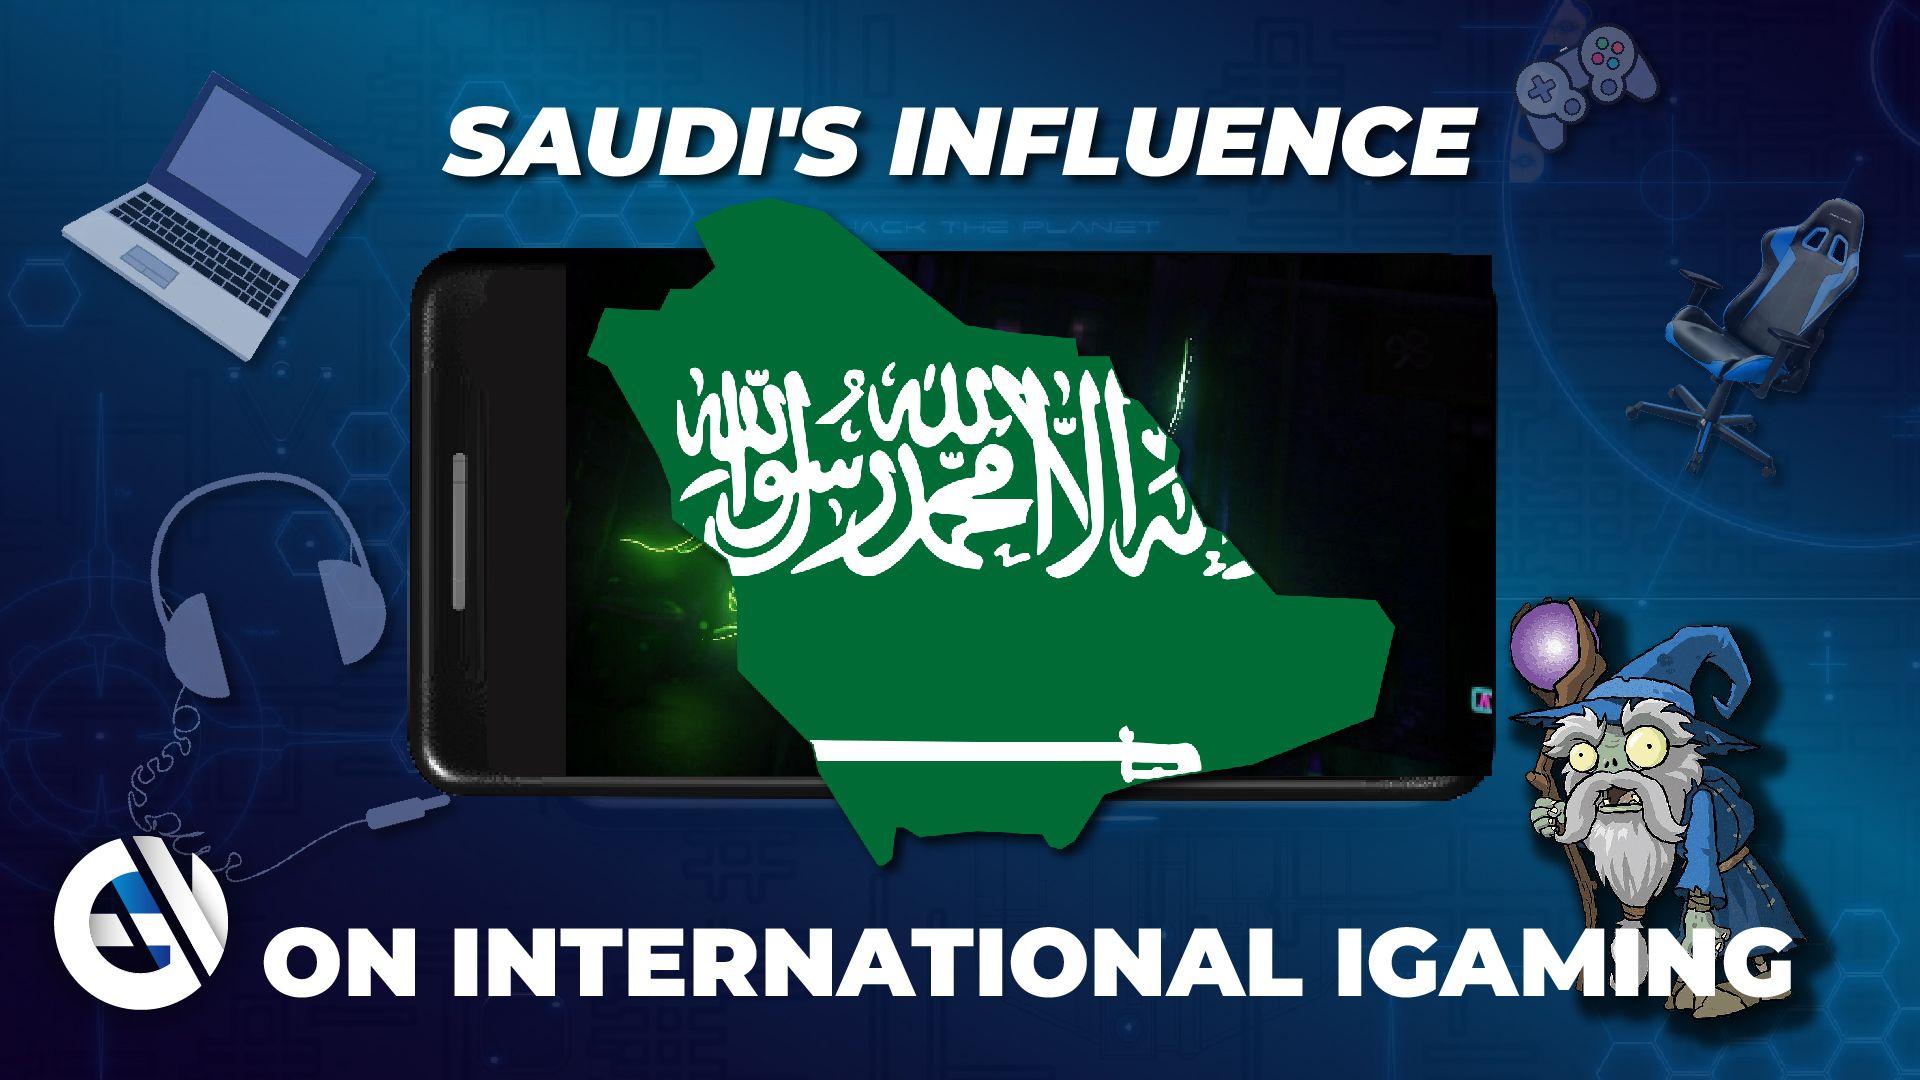 A influência da Arábia Saudita no iGaming internacional